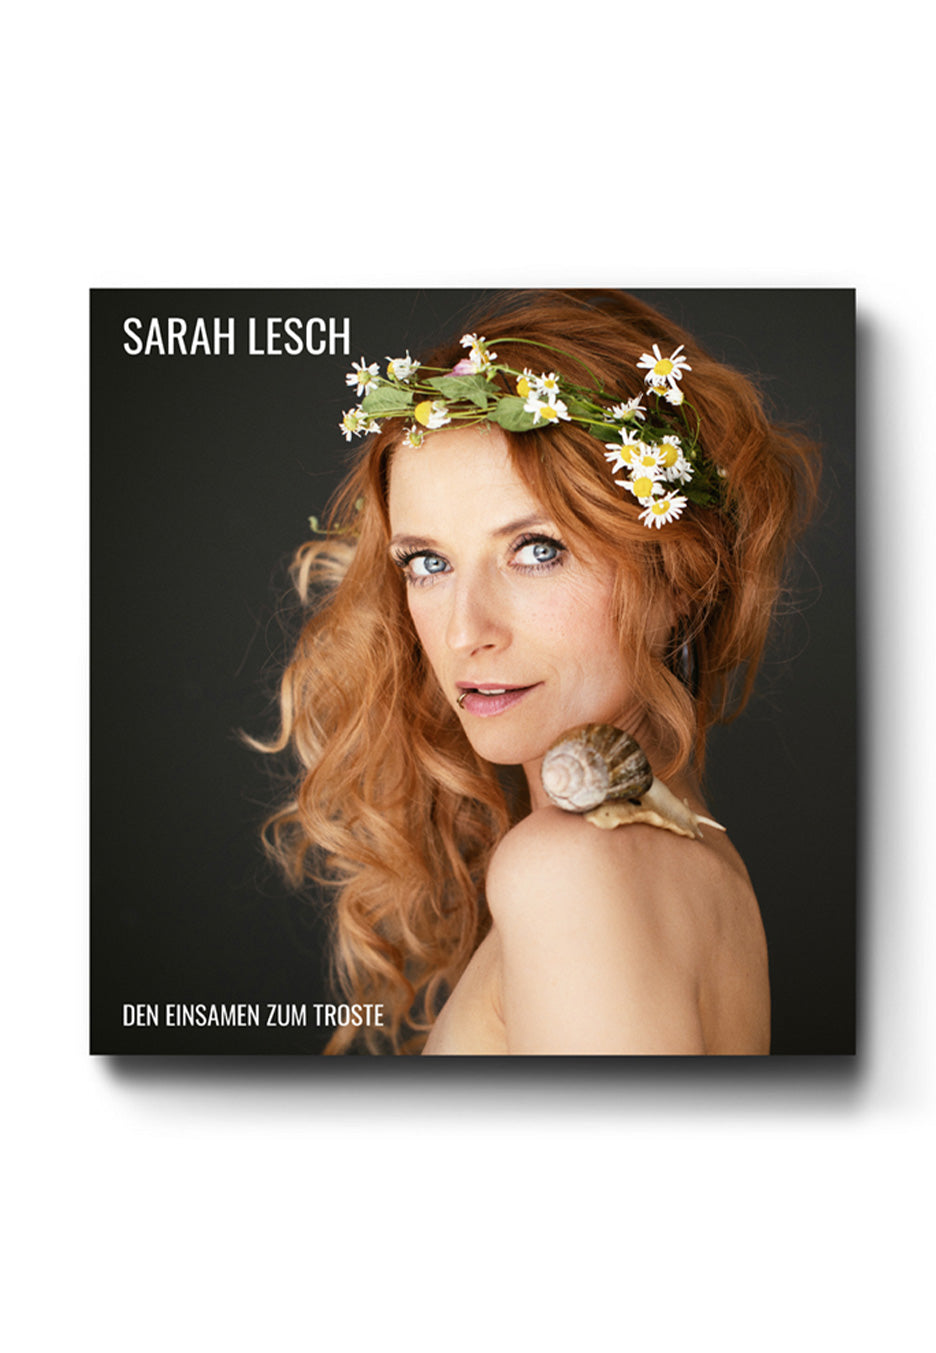 Sarah Lesch - Den Einsamen zum Troste - Single CD